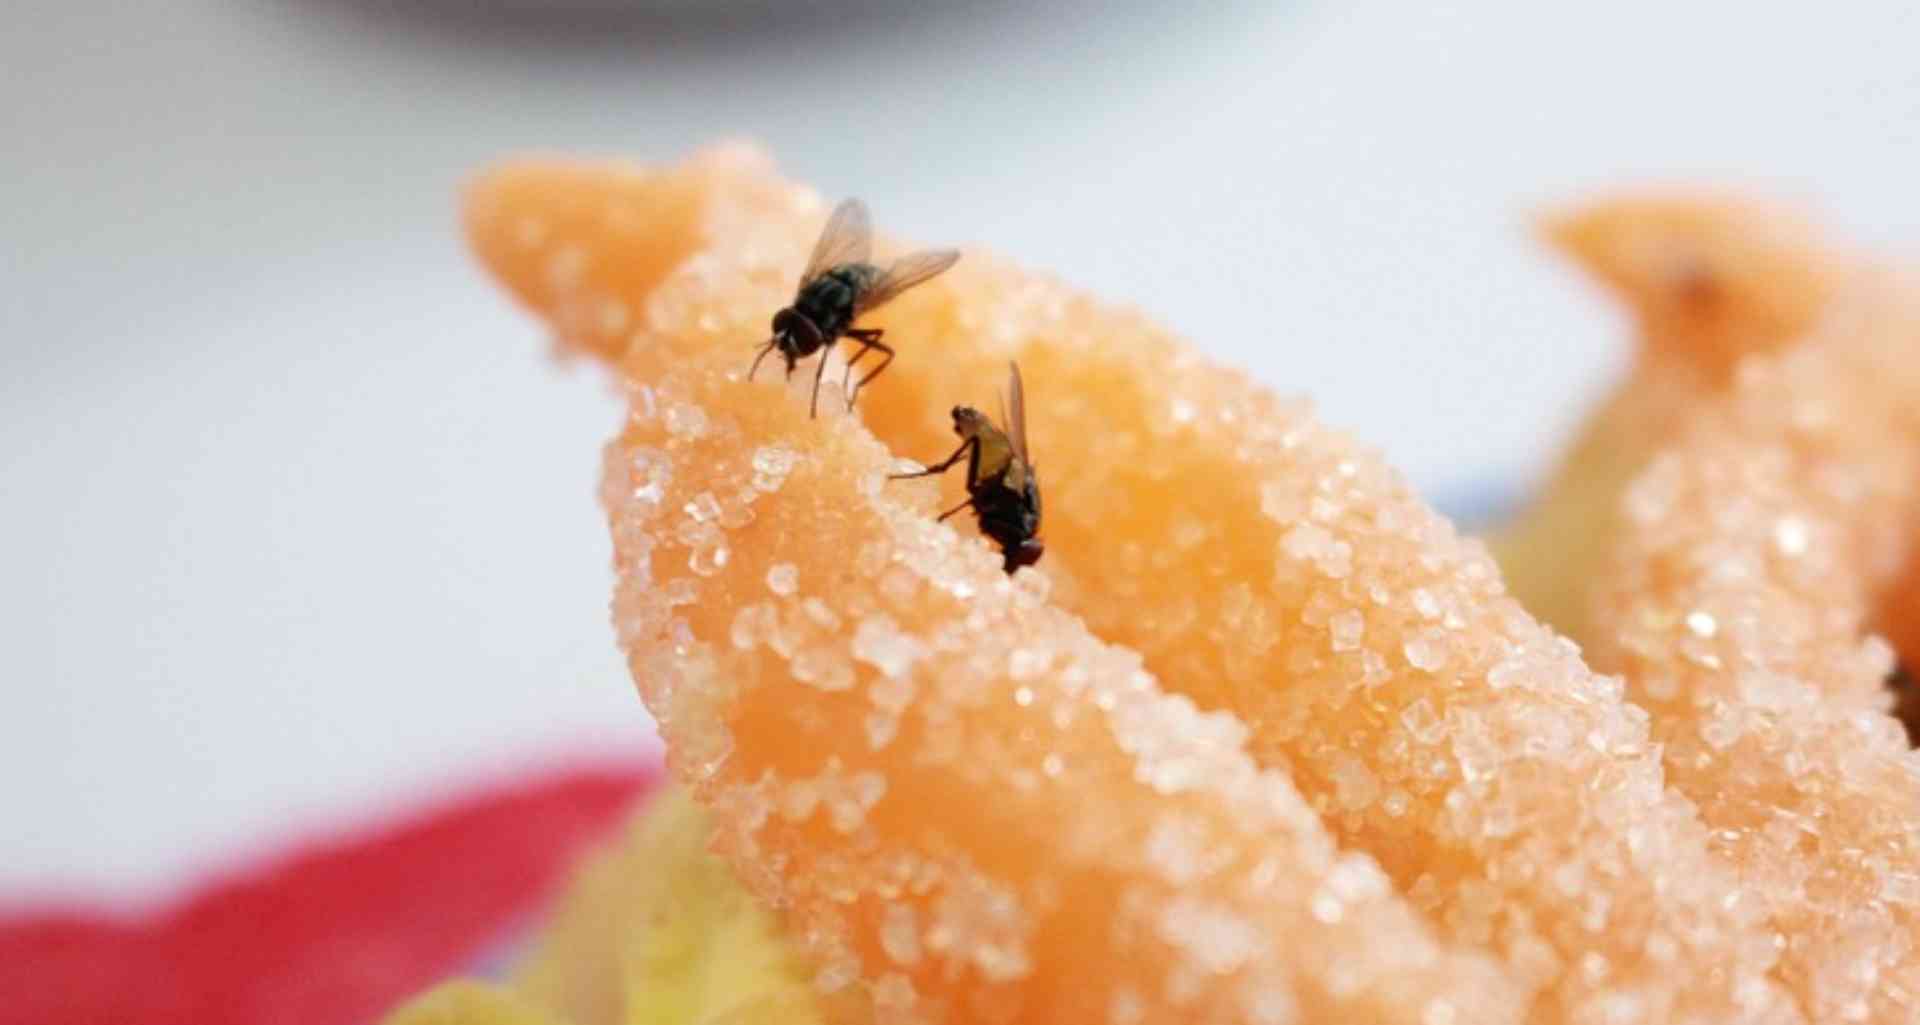 Xô moscas! Aprenda a espantar esse inseto da sua cozinha